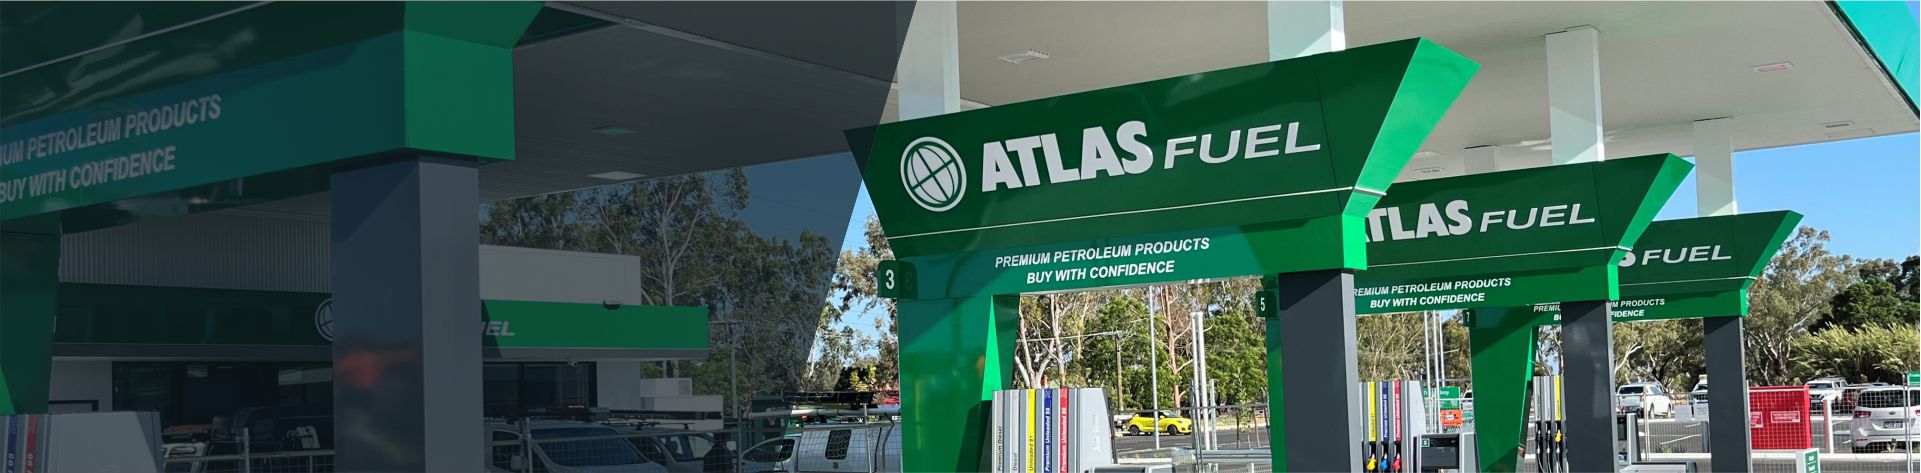 5 Atlas Fuel_compressed